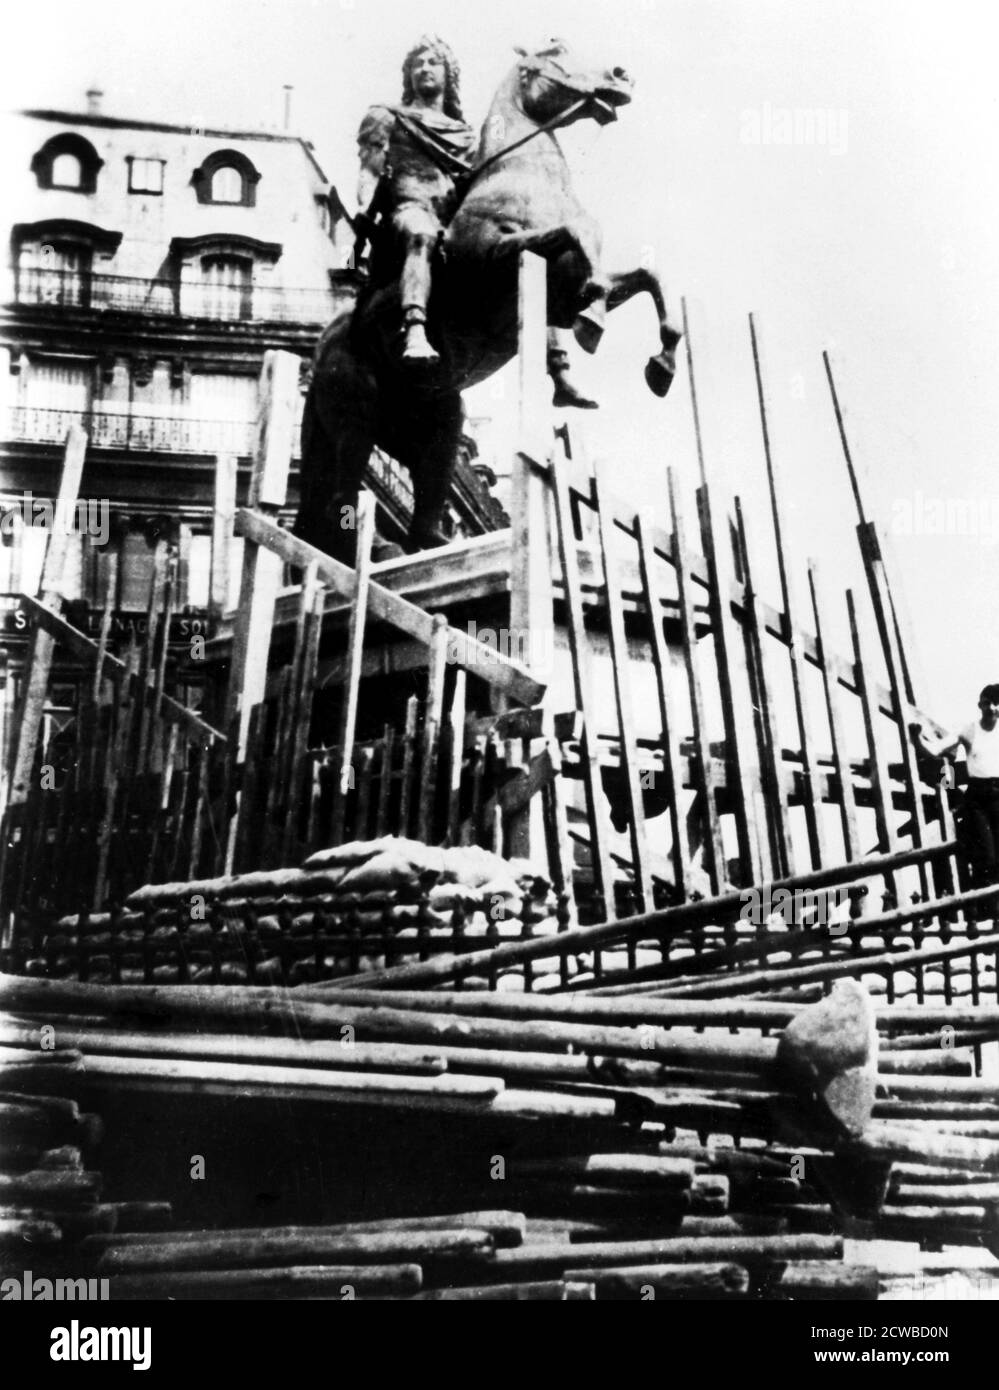 Mesures de protection pour la statue de Louis XIV, Paris, 1940. Le photographe est inconnu. Banque D'Images